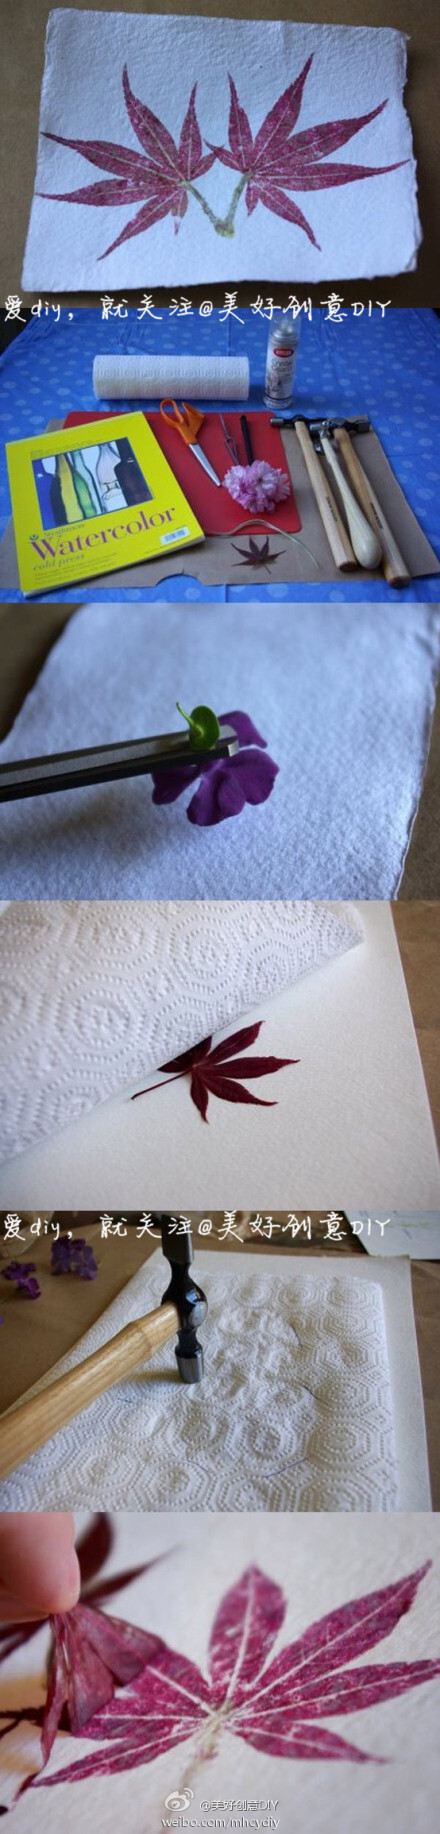 把喜欢的植物印拓在纸上，是一件很美好的事~——更多有趣内容，请关注@美好创意DIY （http://t.cn/zOR4l2D）